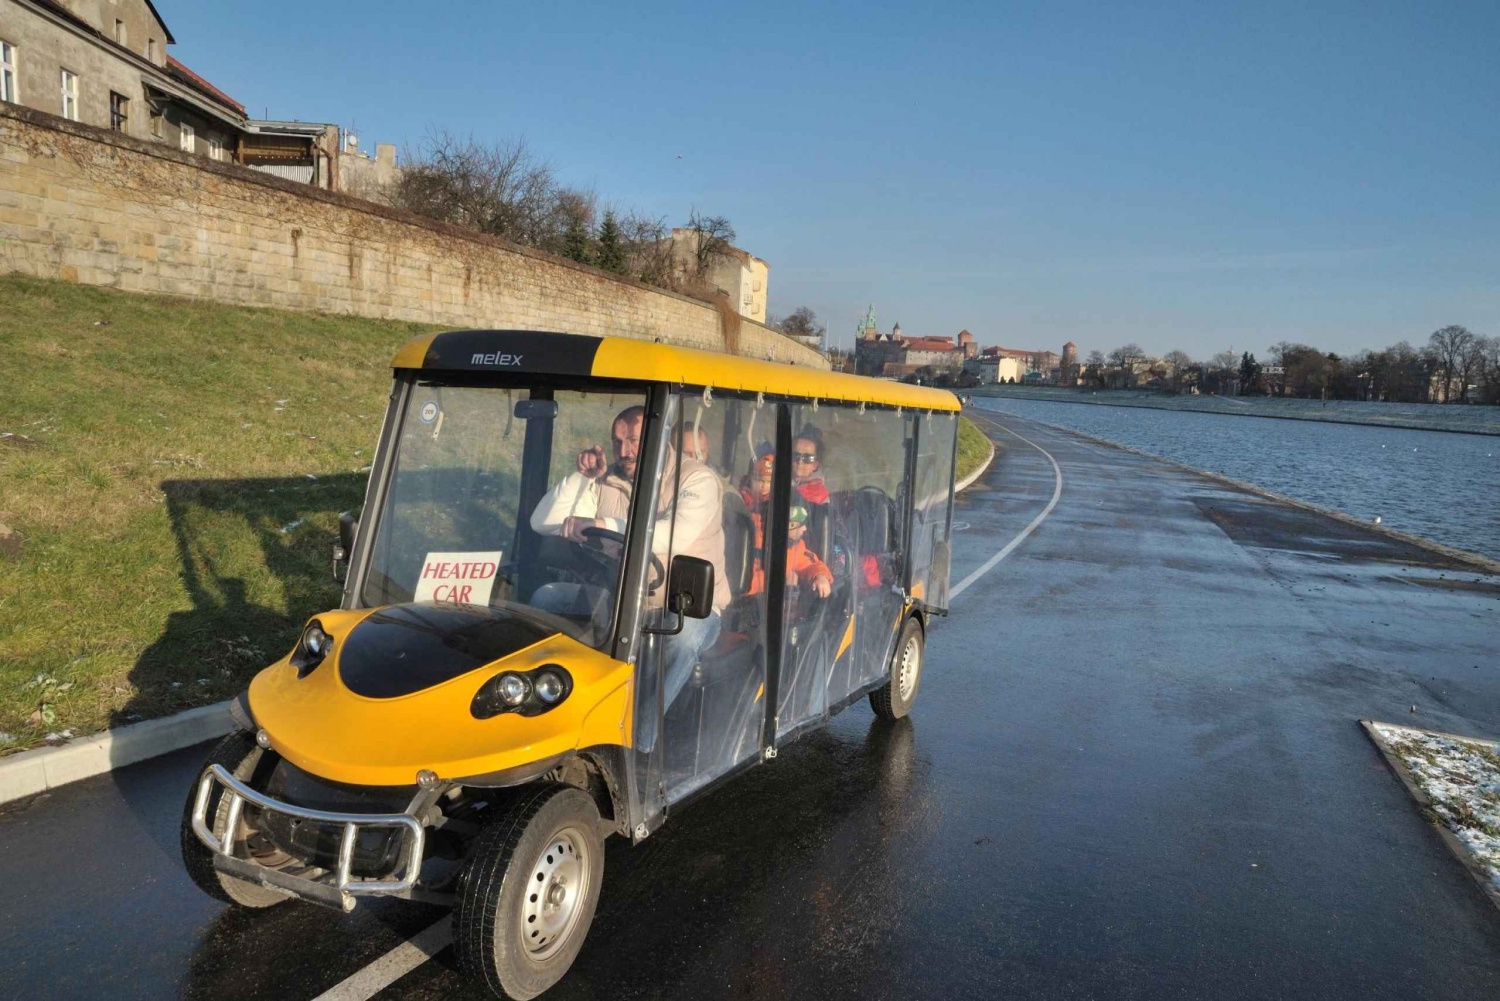 Krakau: Altstadt mit dem Golfwagen und Führung durch das Schloss Wawel